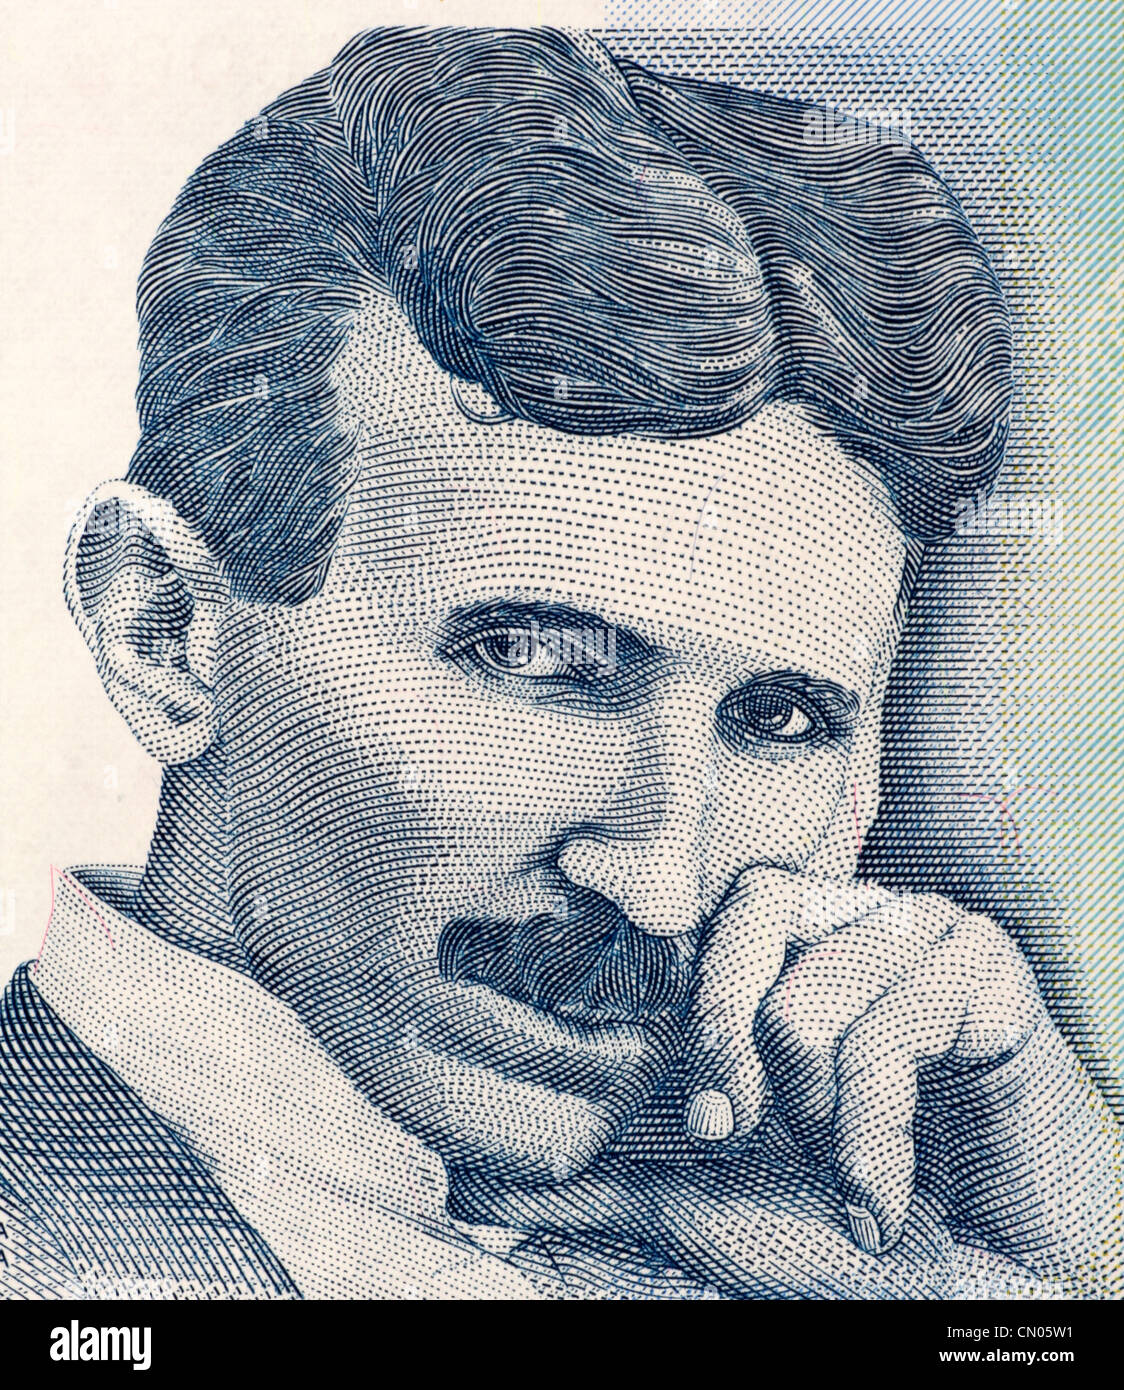 Nikola Tesla auf 100 Dinara 2006 Banknote aus Serbien. Am besten bekannt als der Vater der Physik. Stockfoto